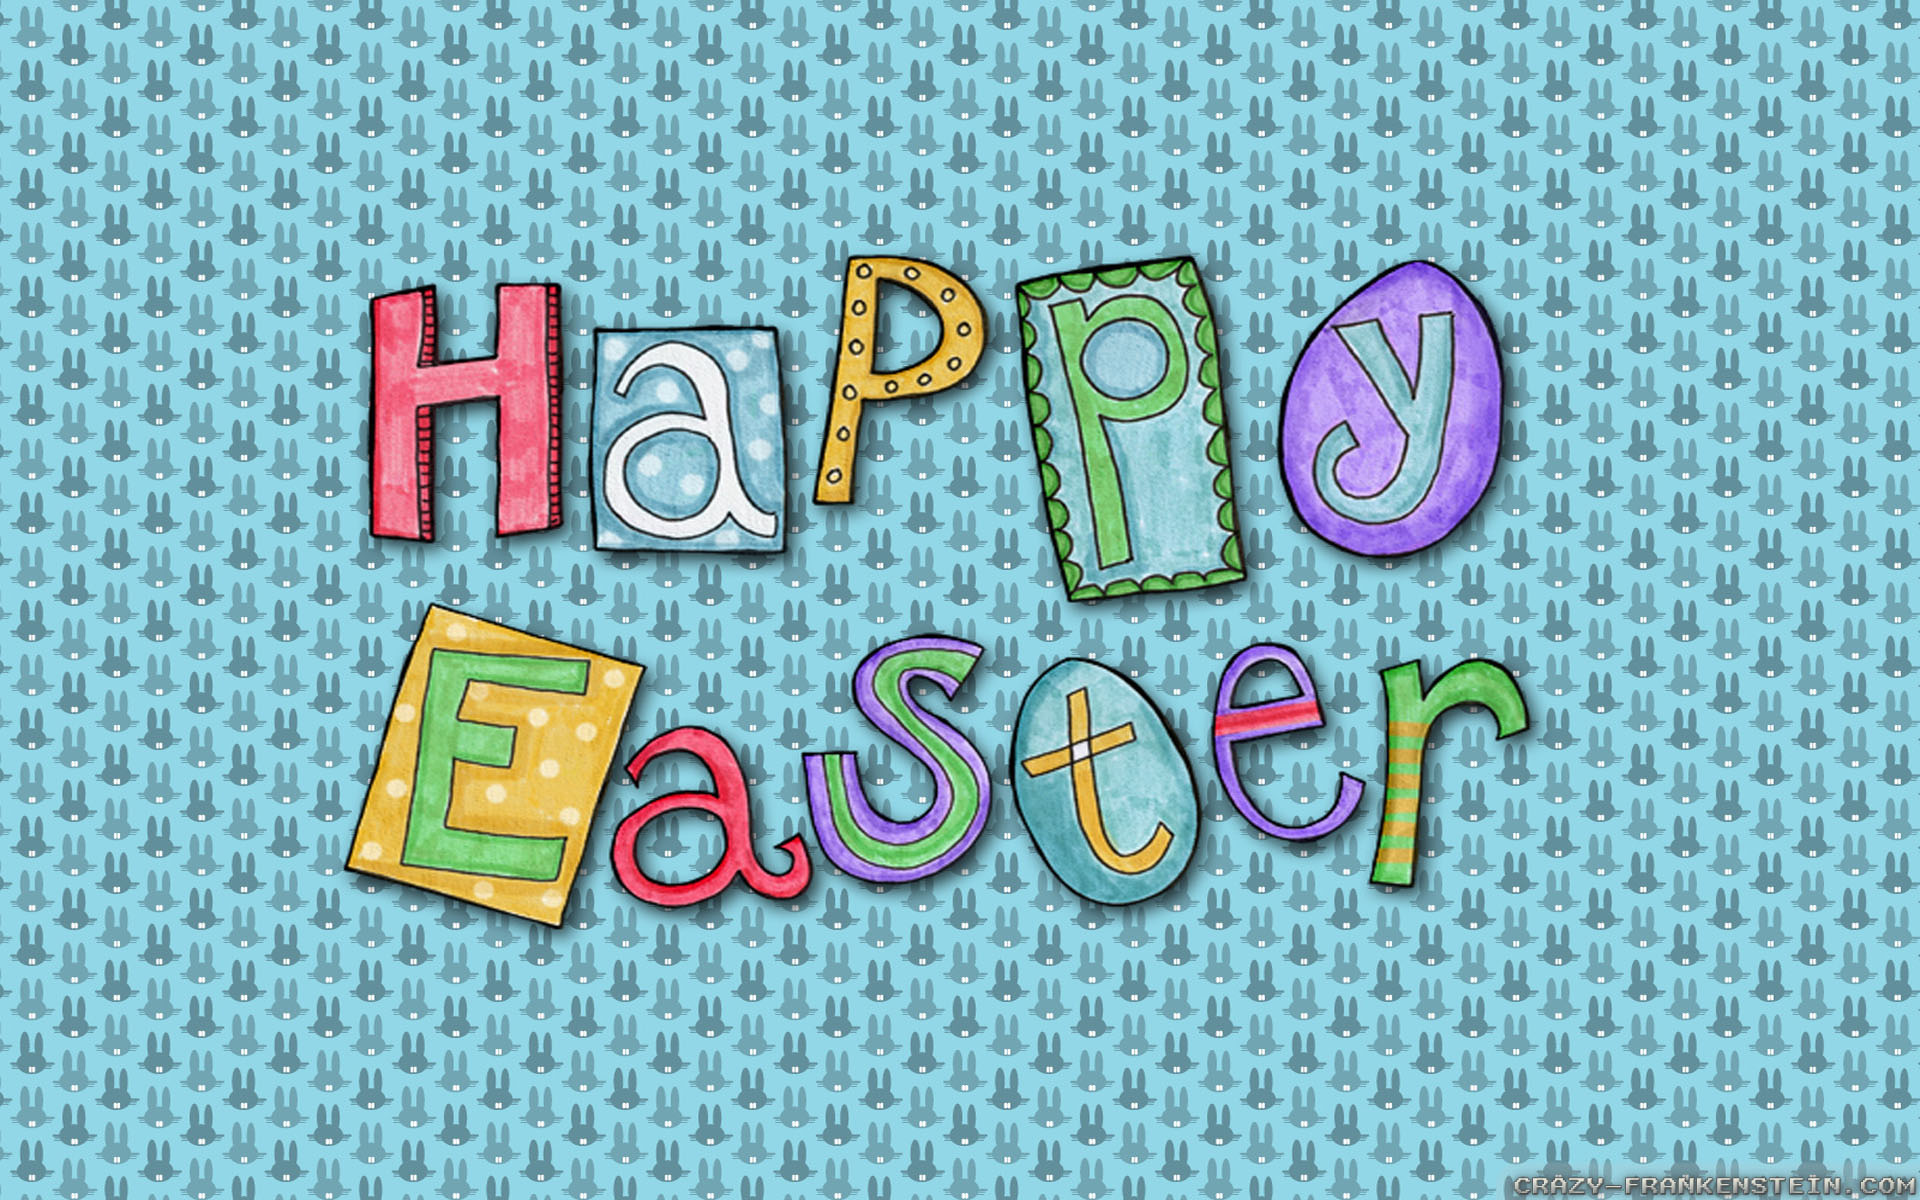 Happy Easter 2014 - HD Wallpaper 